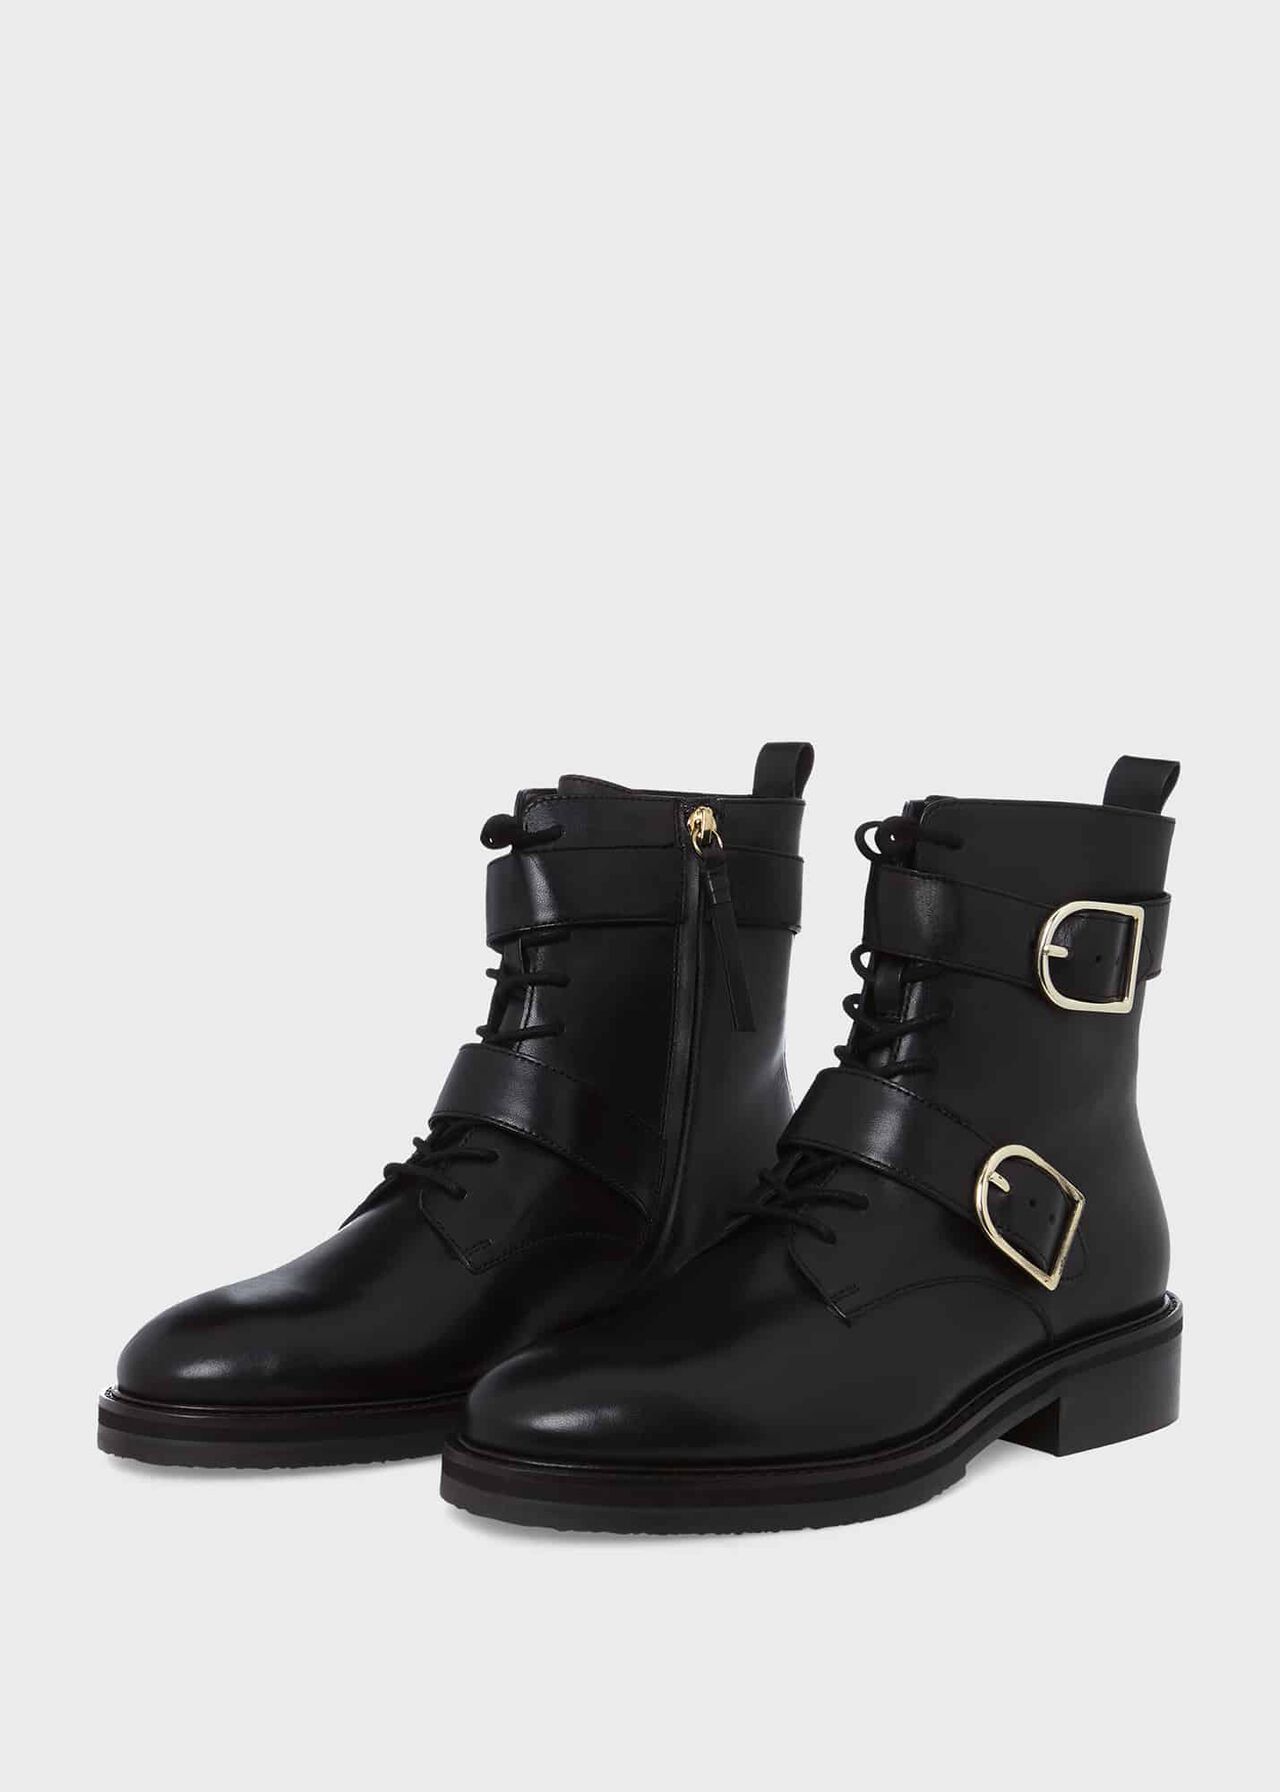 Bronwyn Boots, Black, hi-res